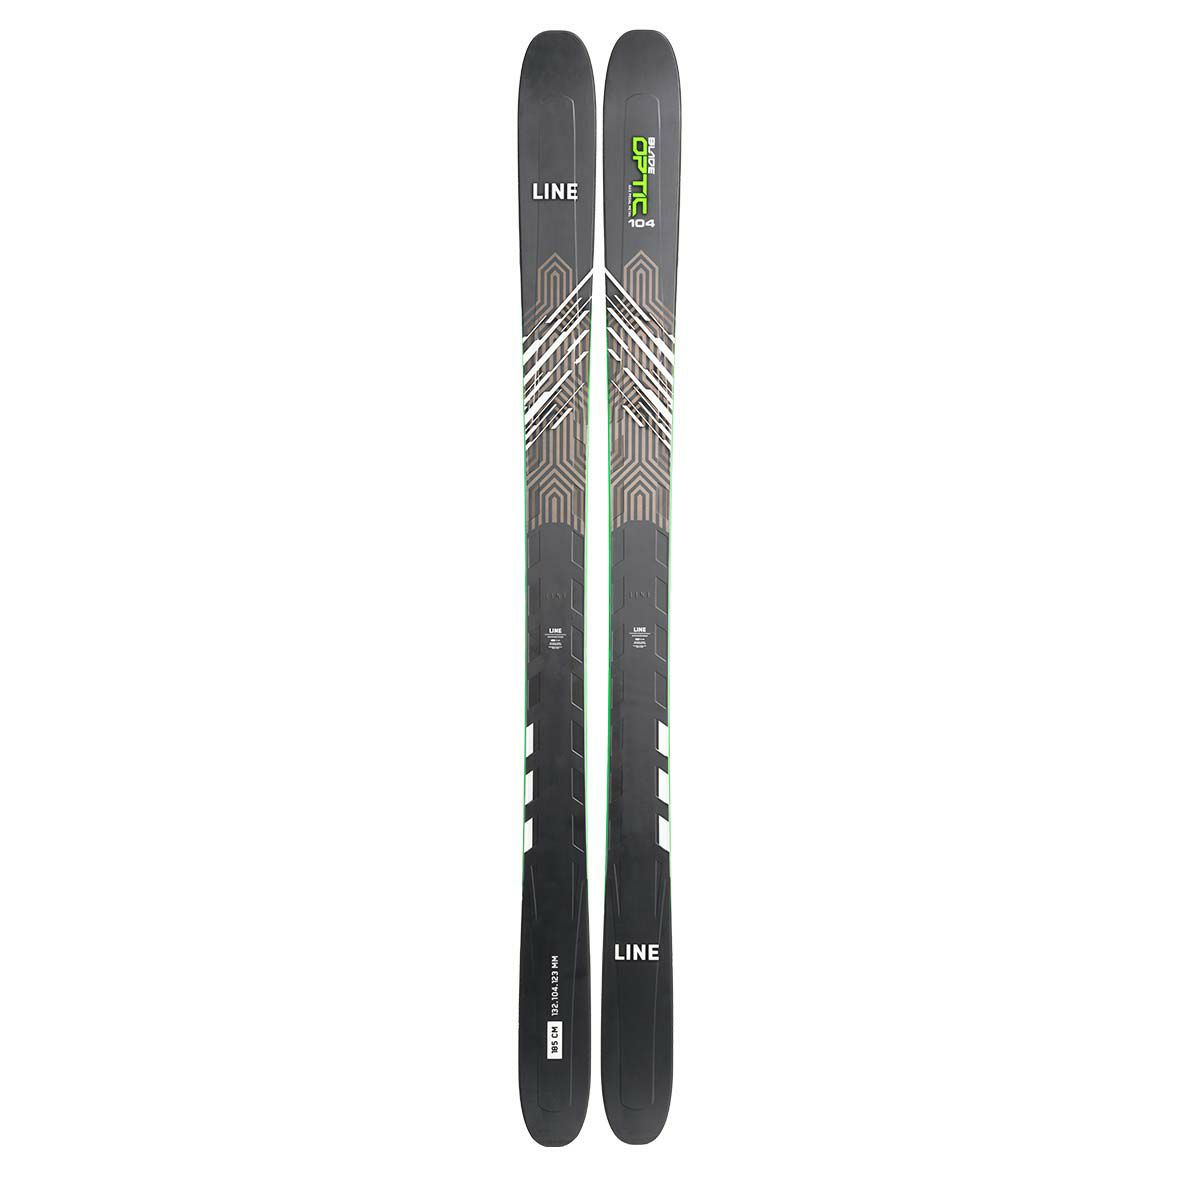 ベースエッジ-05elan スキー板/ HOTWAX済